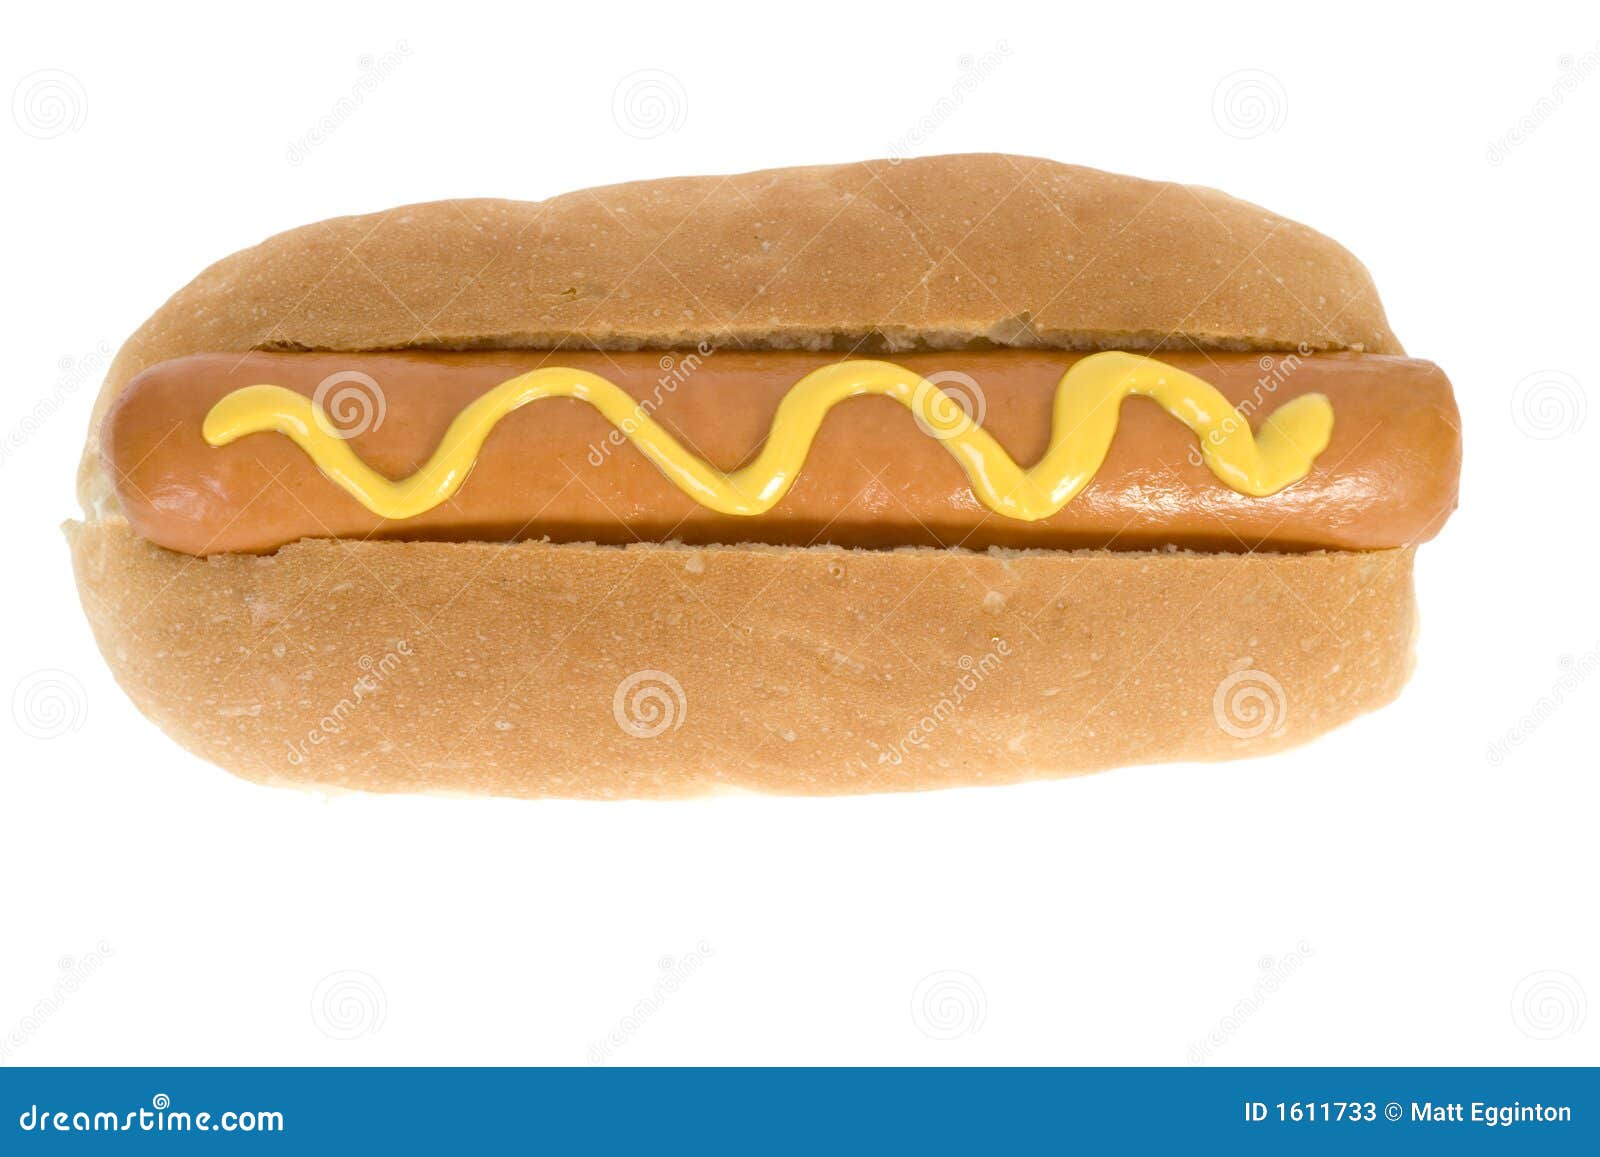 hot dog - fast food